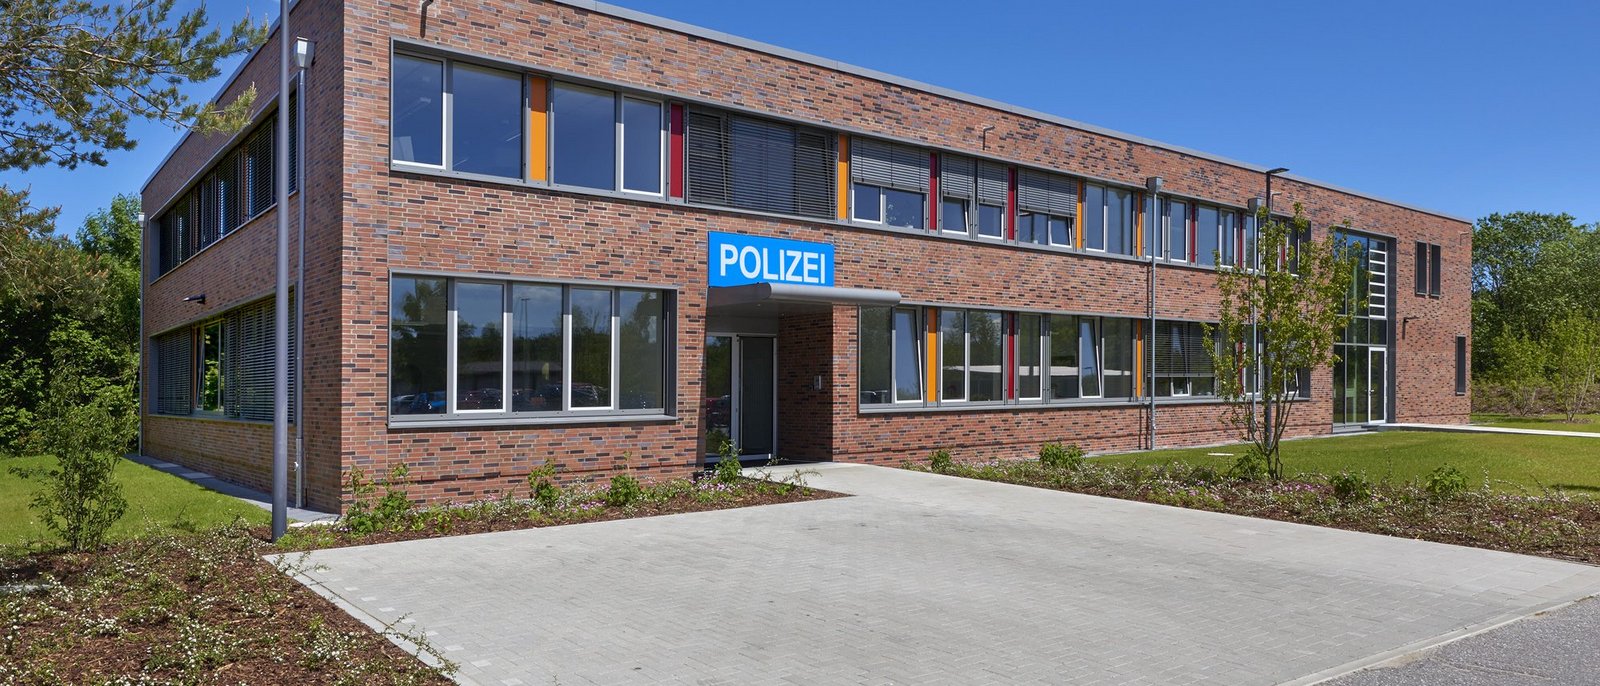 Ein Polizei-Gebäude